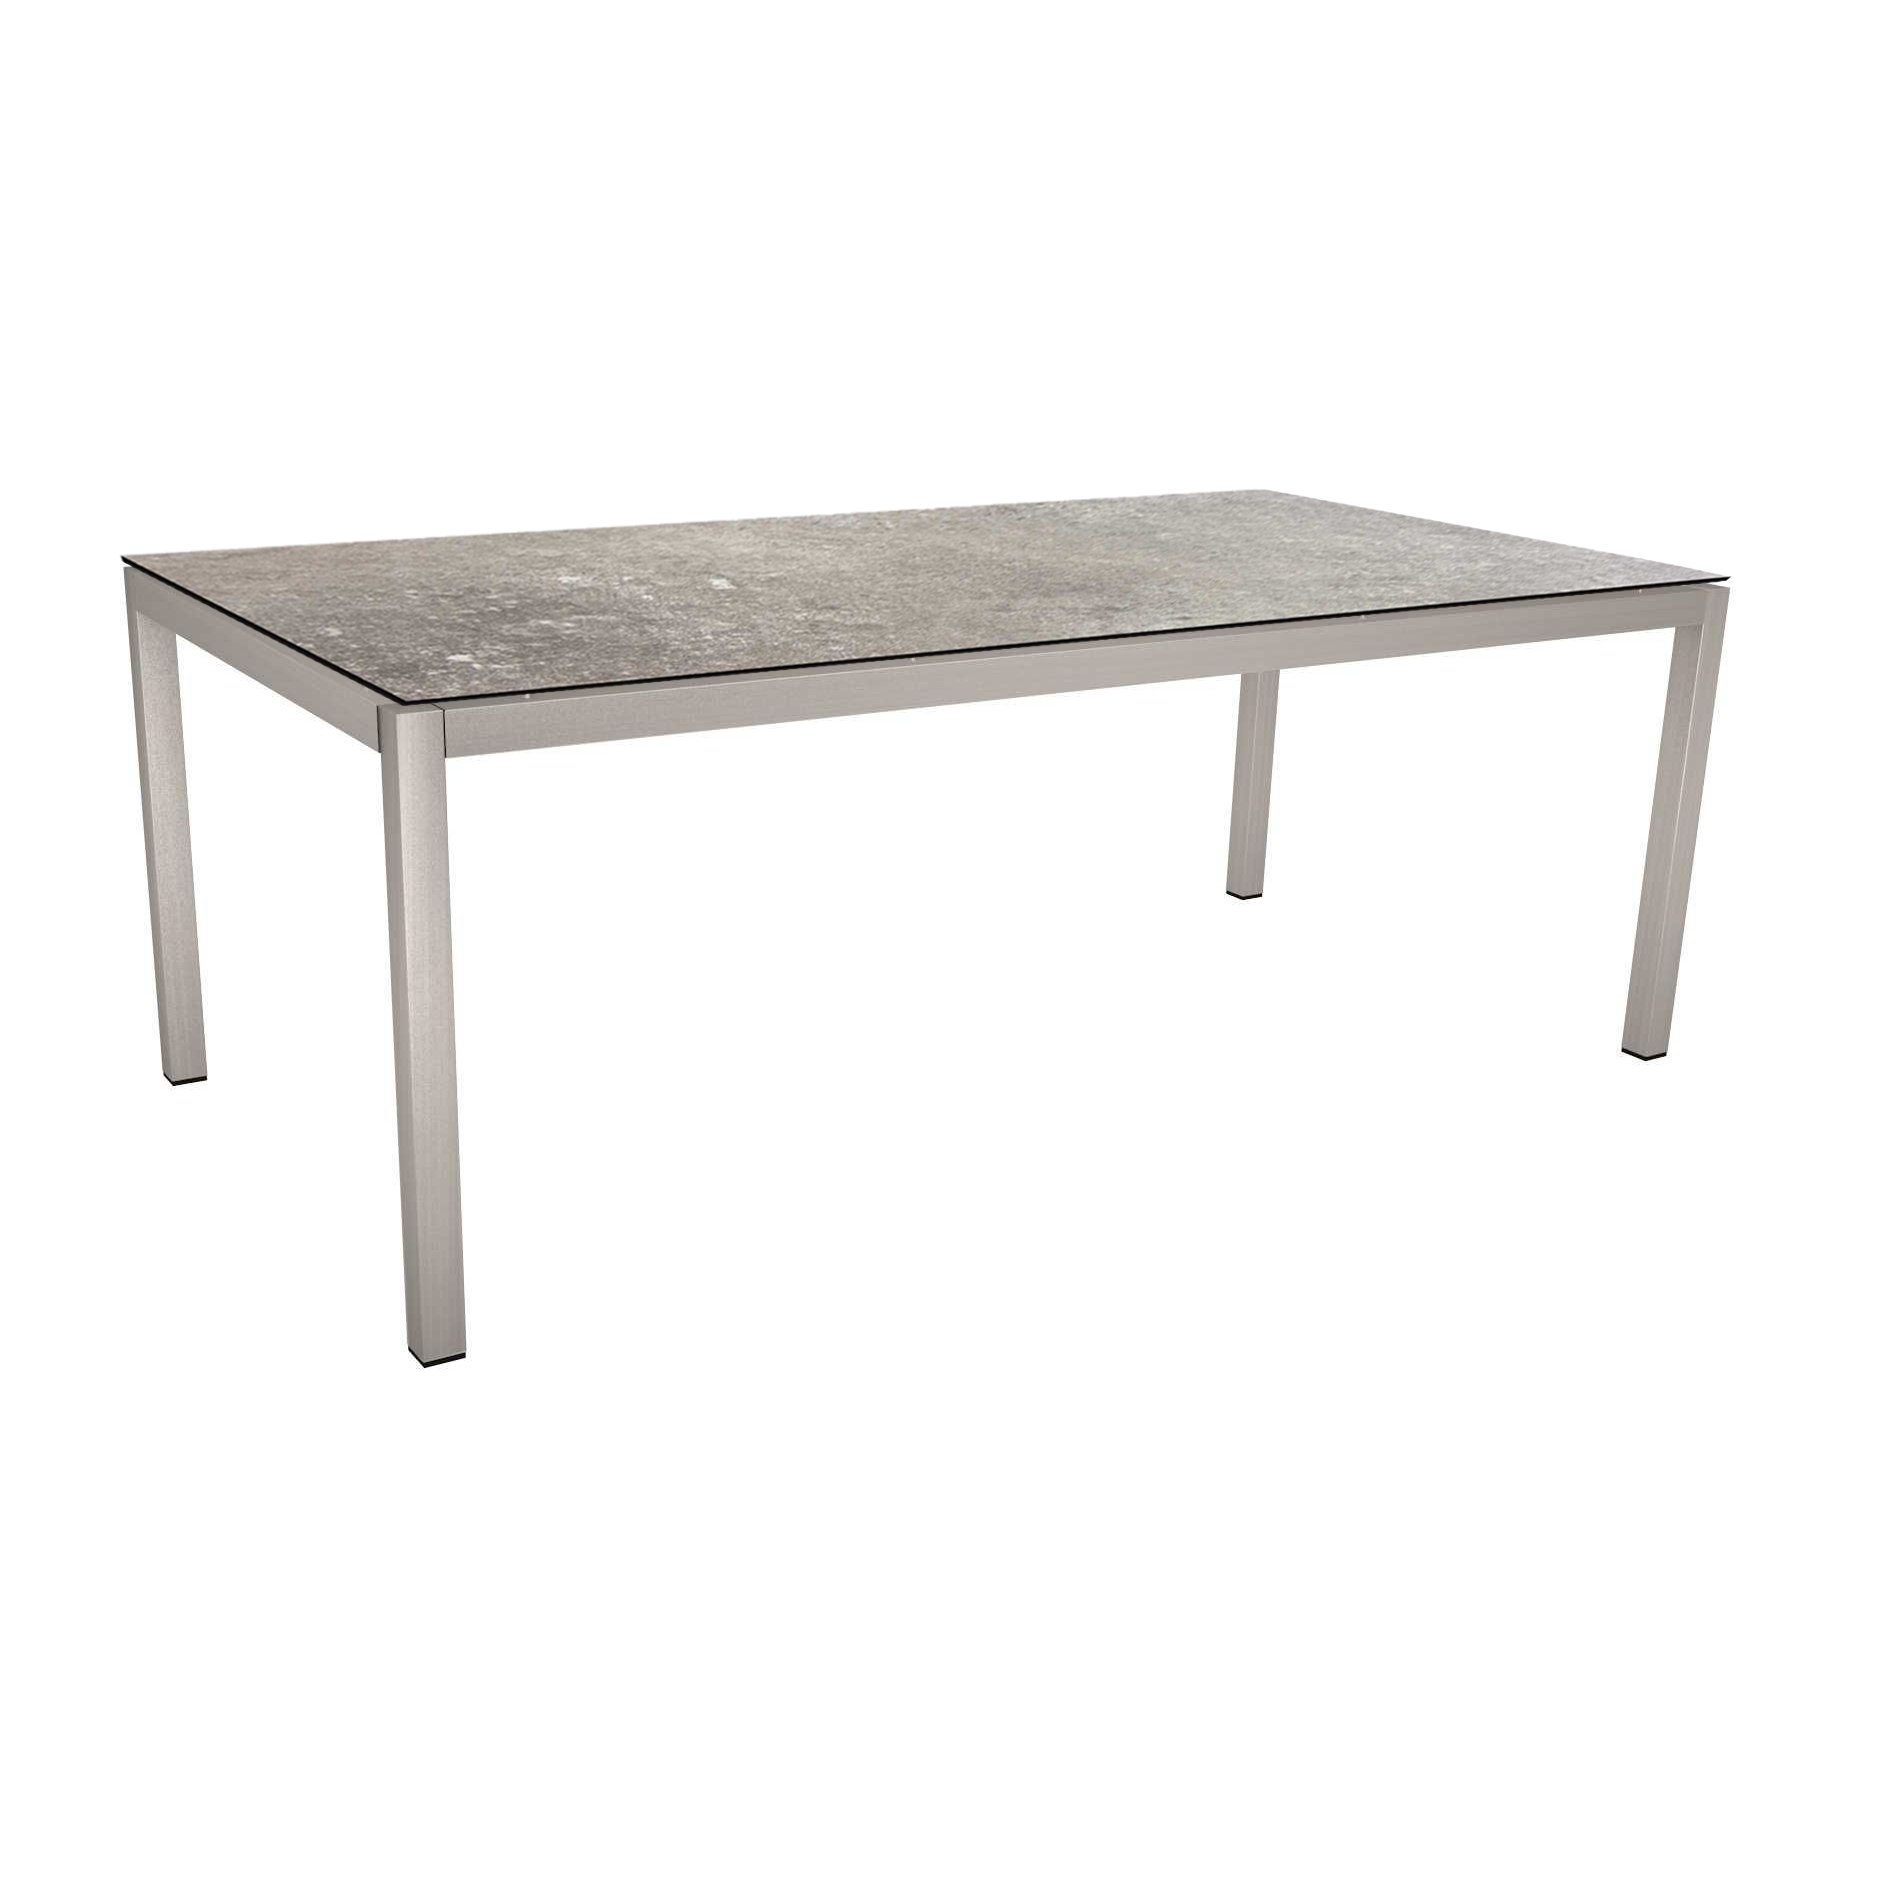 Stern Tischsystem, Gestell Edelstahl Vierkantrohr, Tischplatte HPL Vintage stone, 200x100 cm